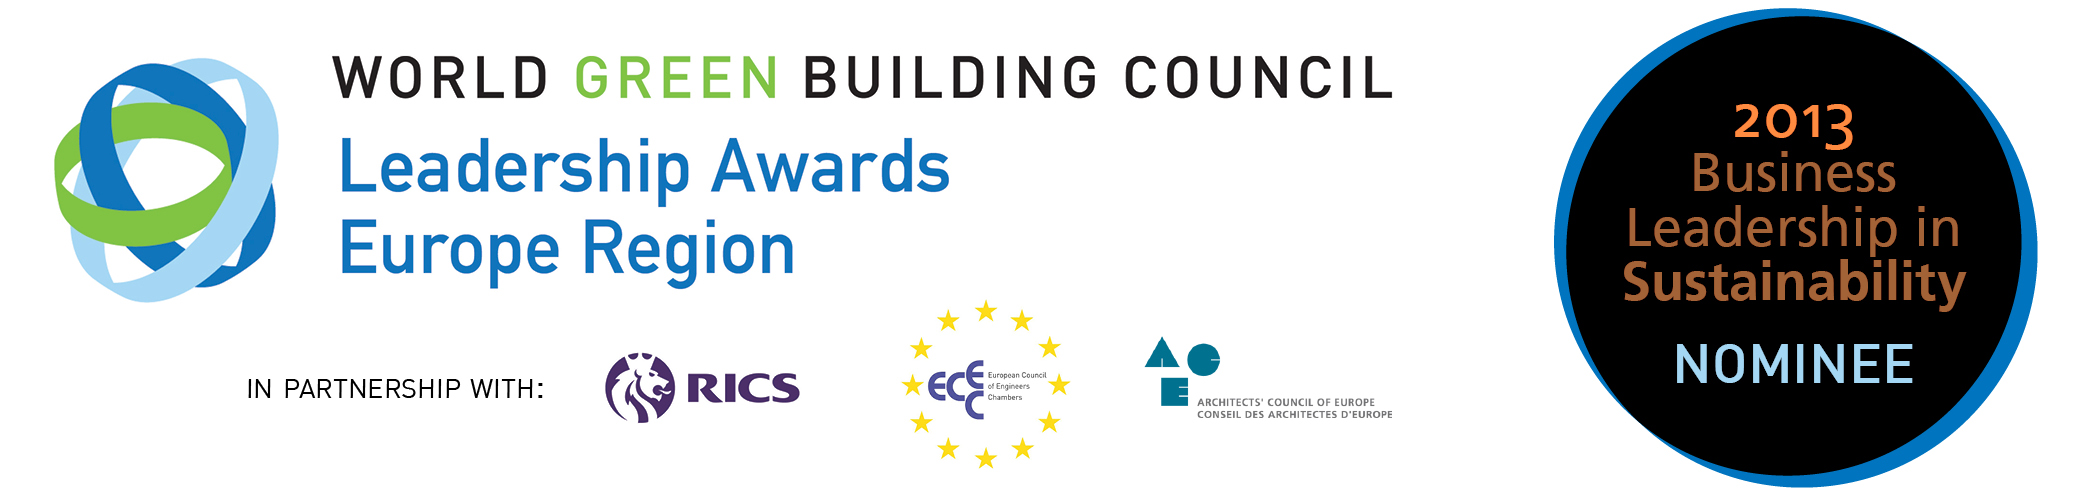 Podjetje Riko Hiše med nominiranci za Vodstveno nagrado Evropske regije World Green Building Council